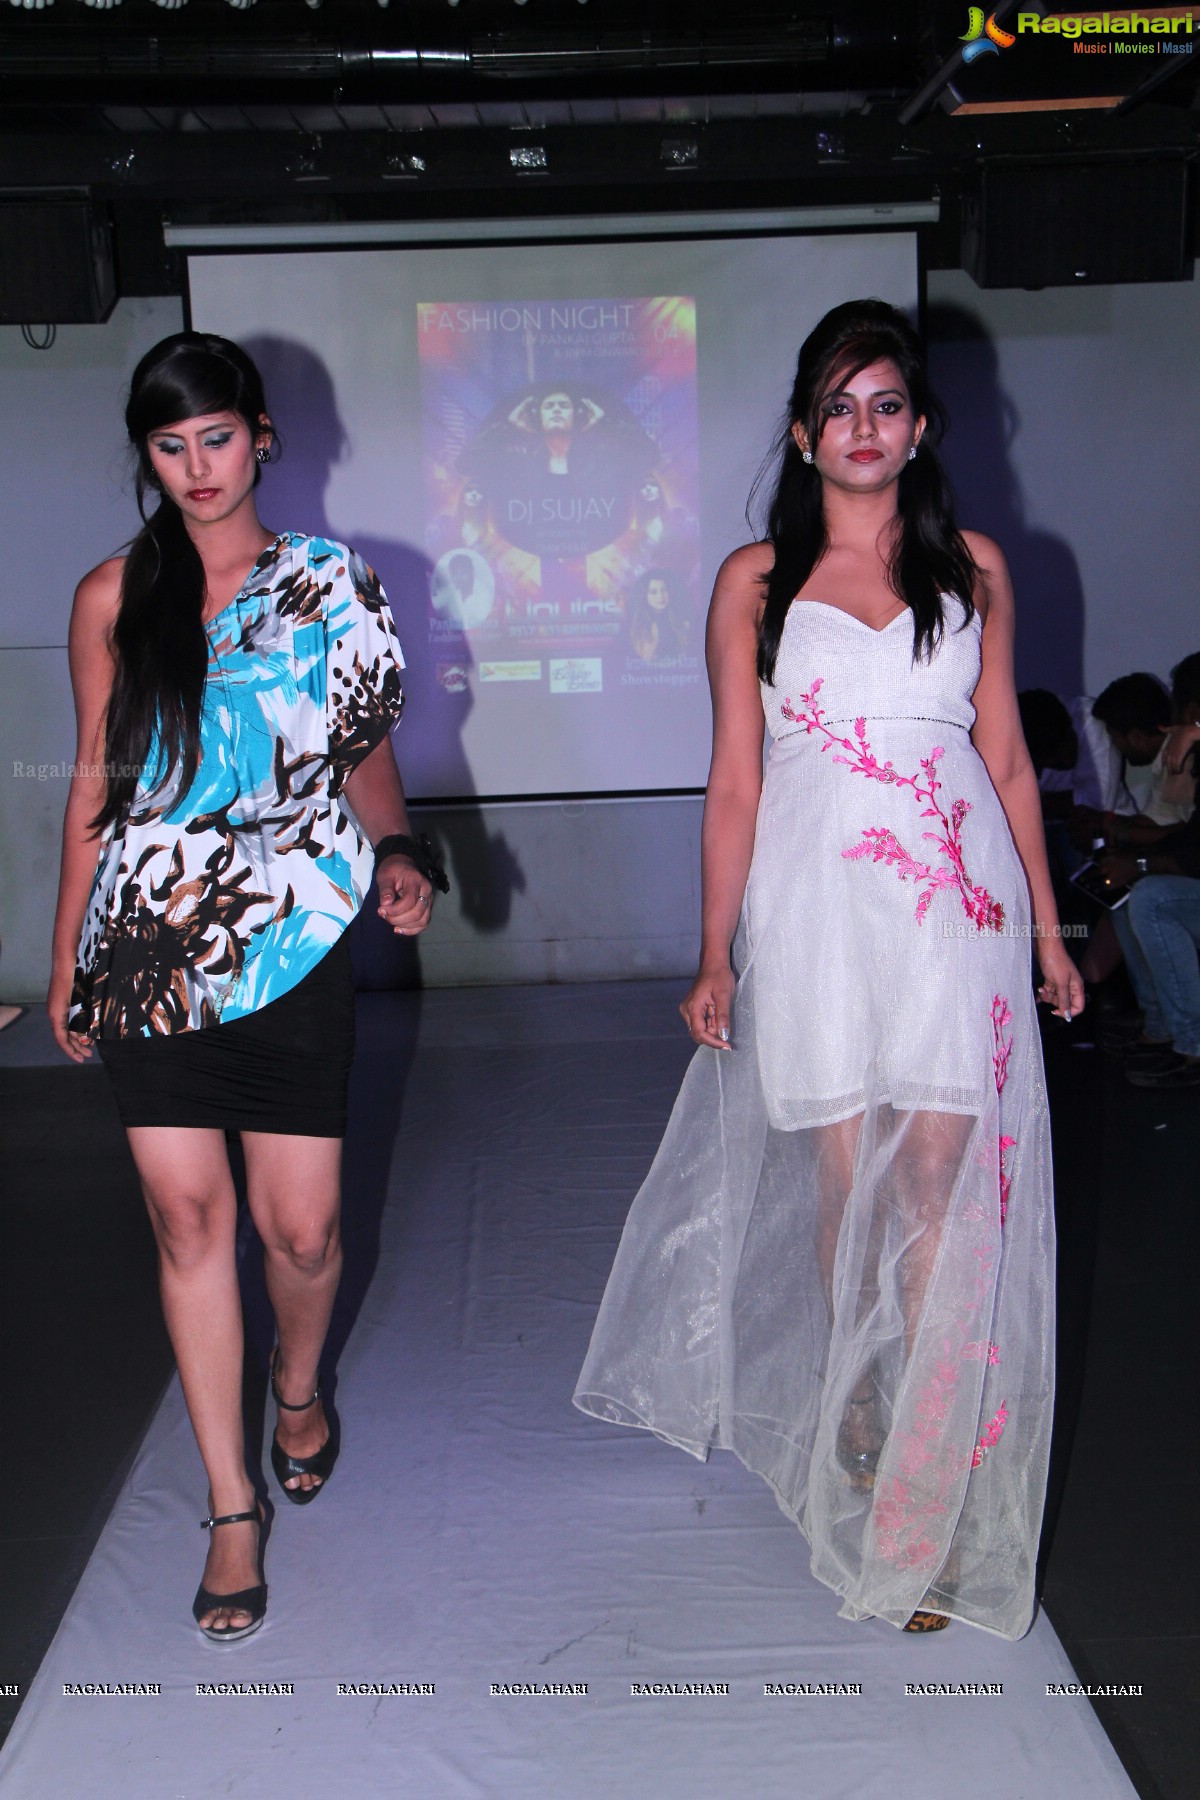 Fashion Night by Pankaj Gupta at Liquids